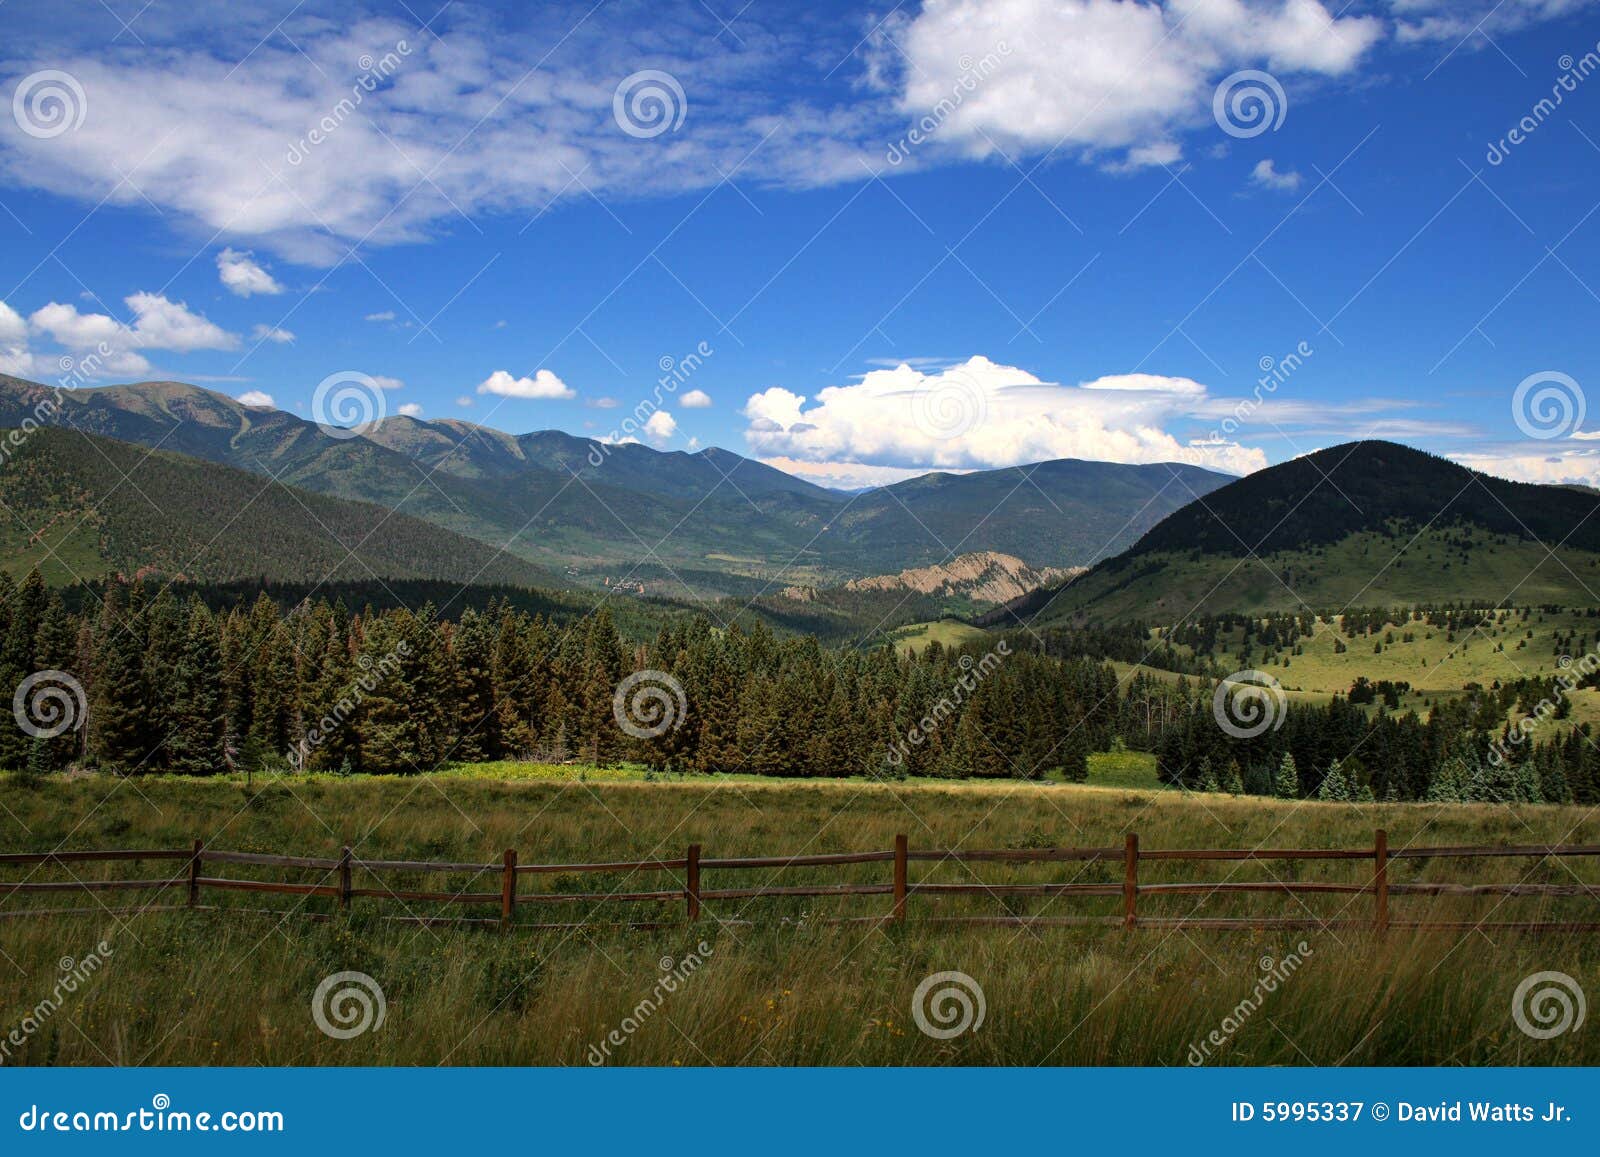 colorado mountains